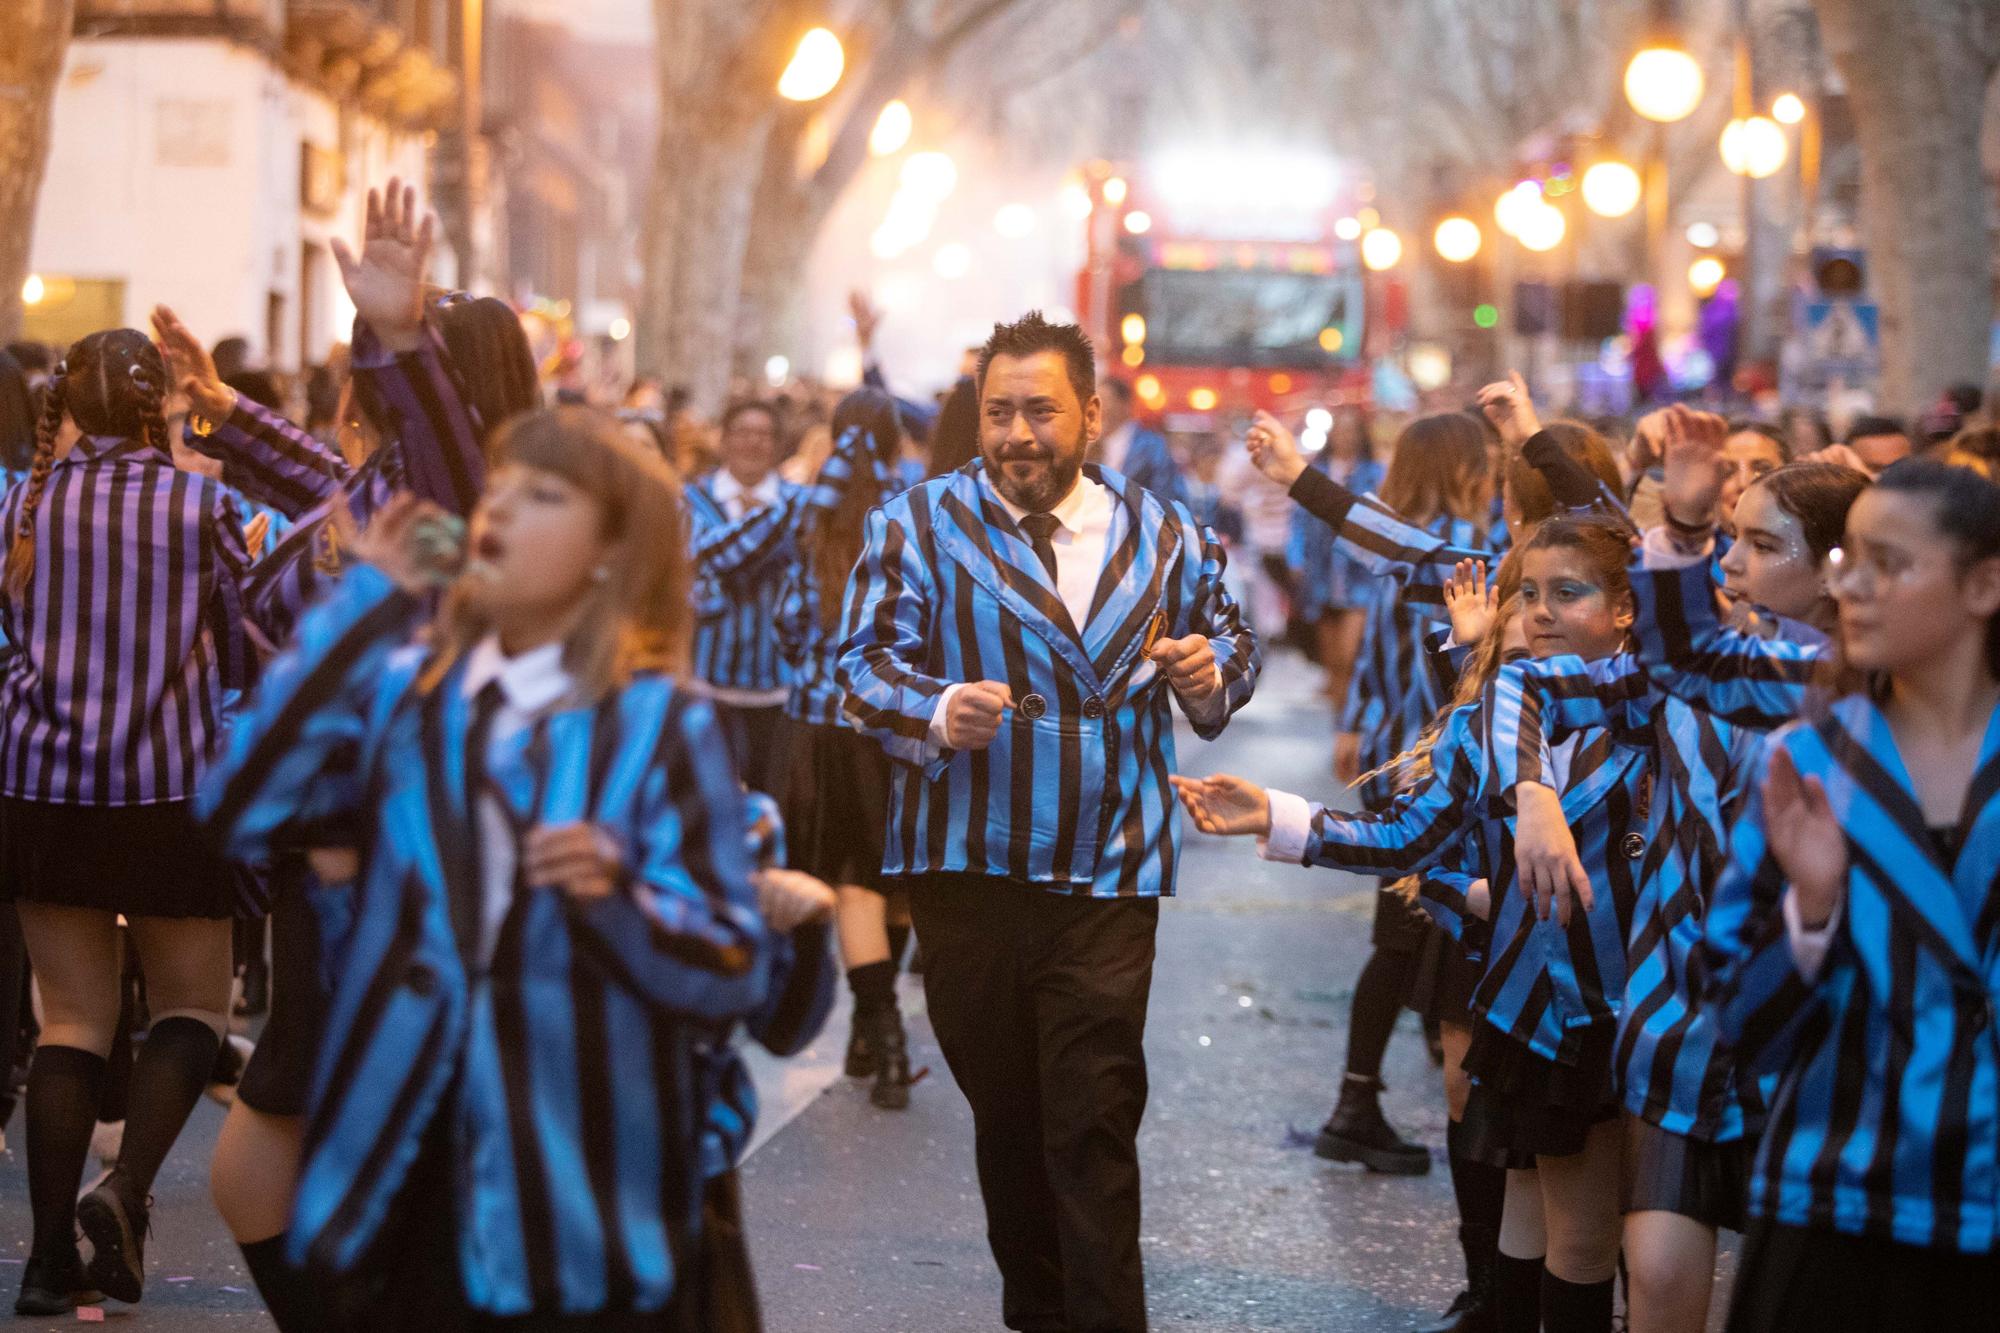 Karneval auf Mallorca: Die besten Bilder vom großen Umzug in Palma